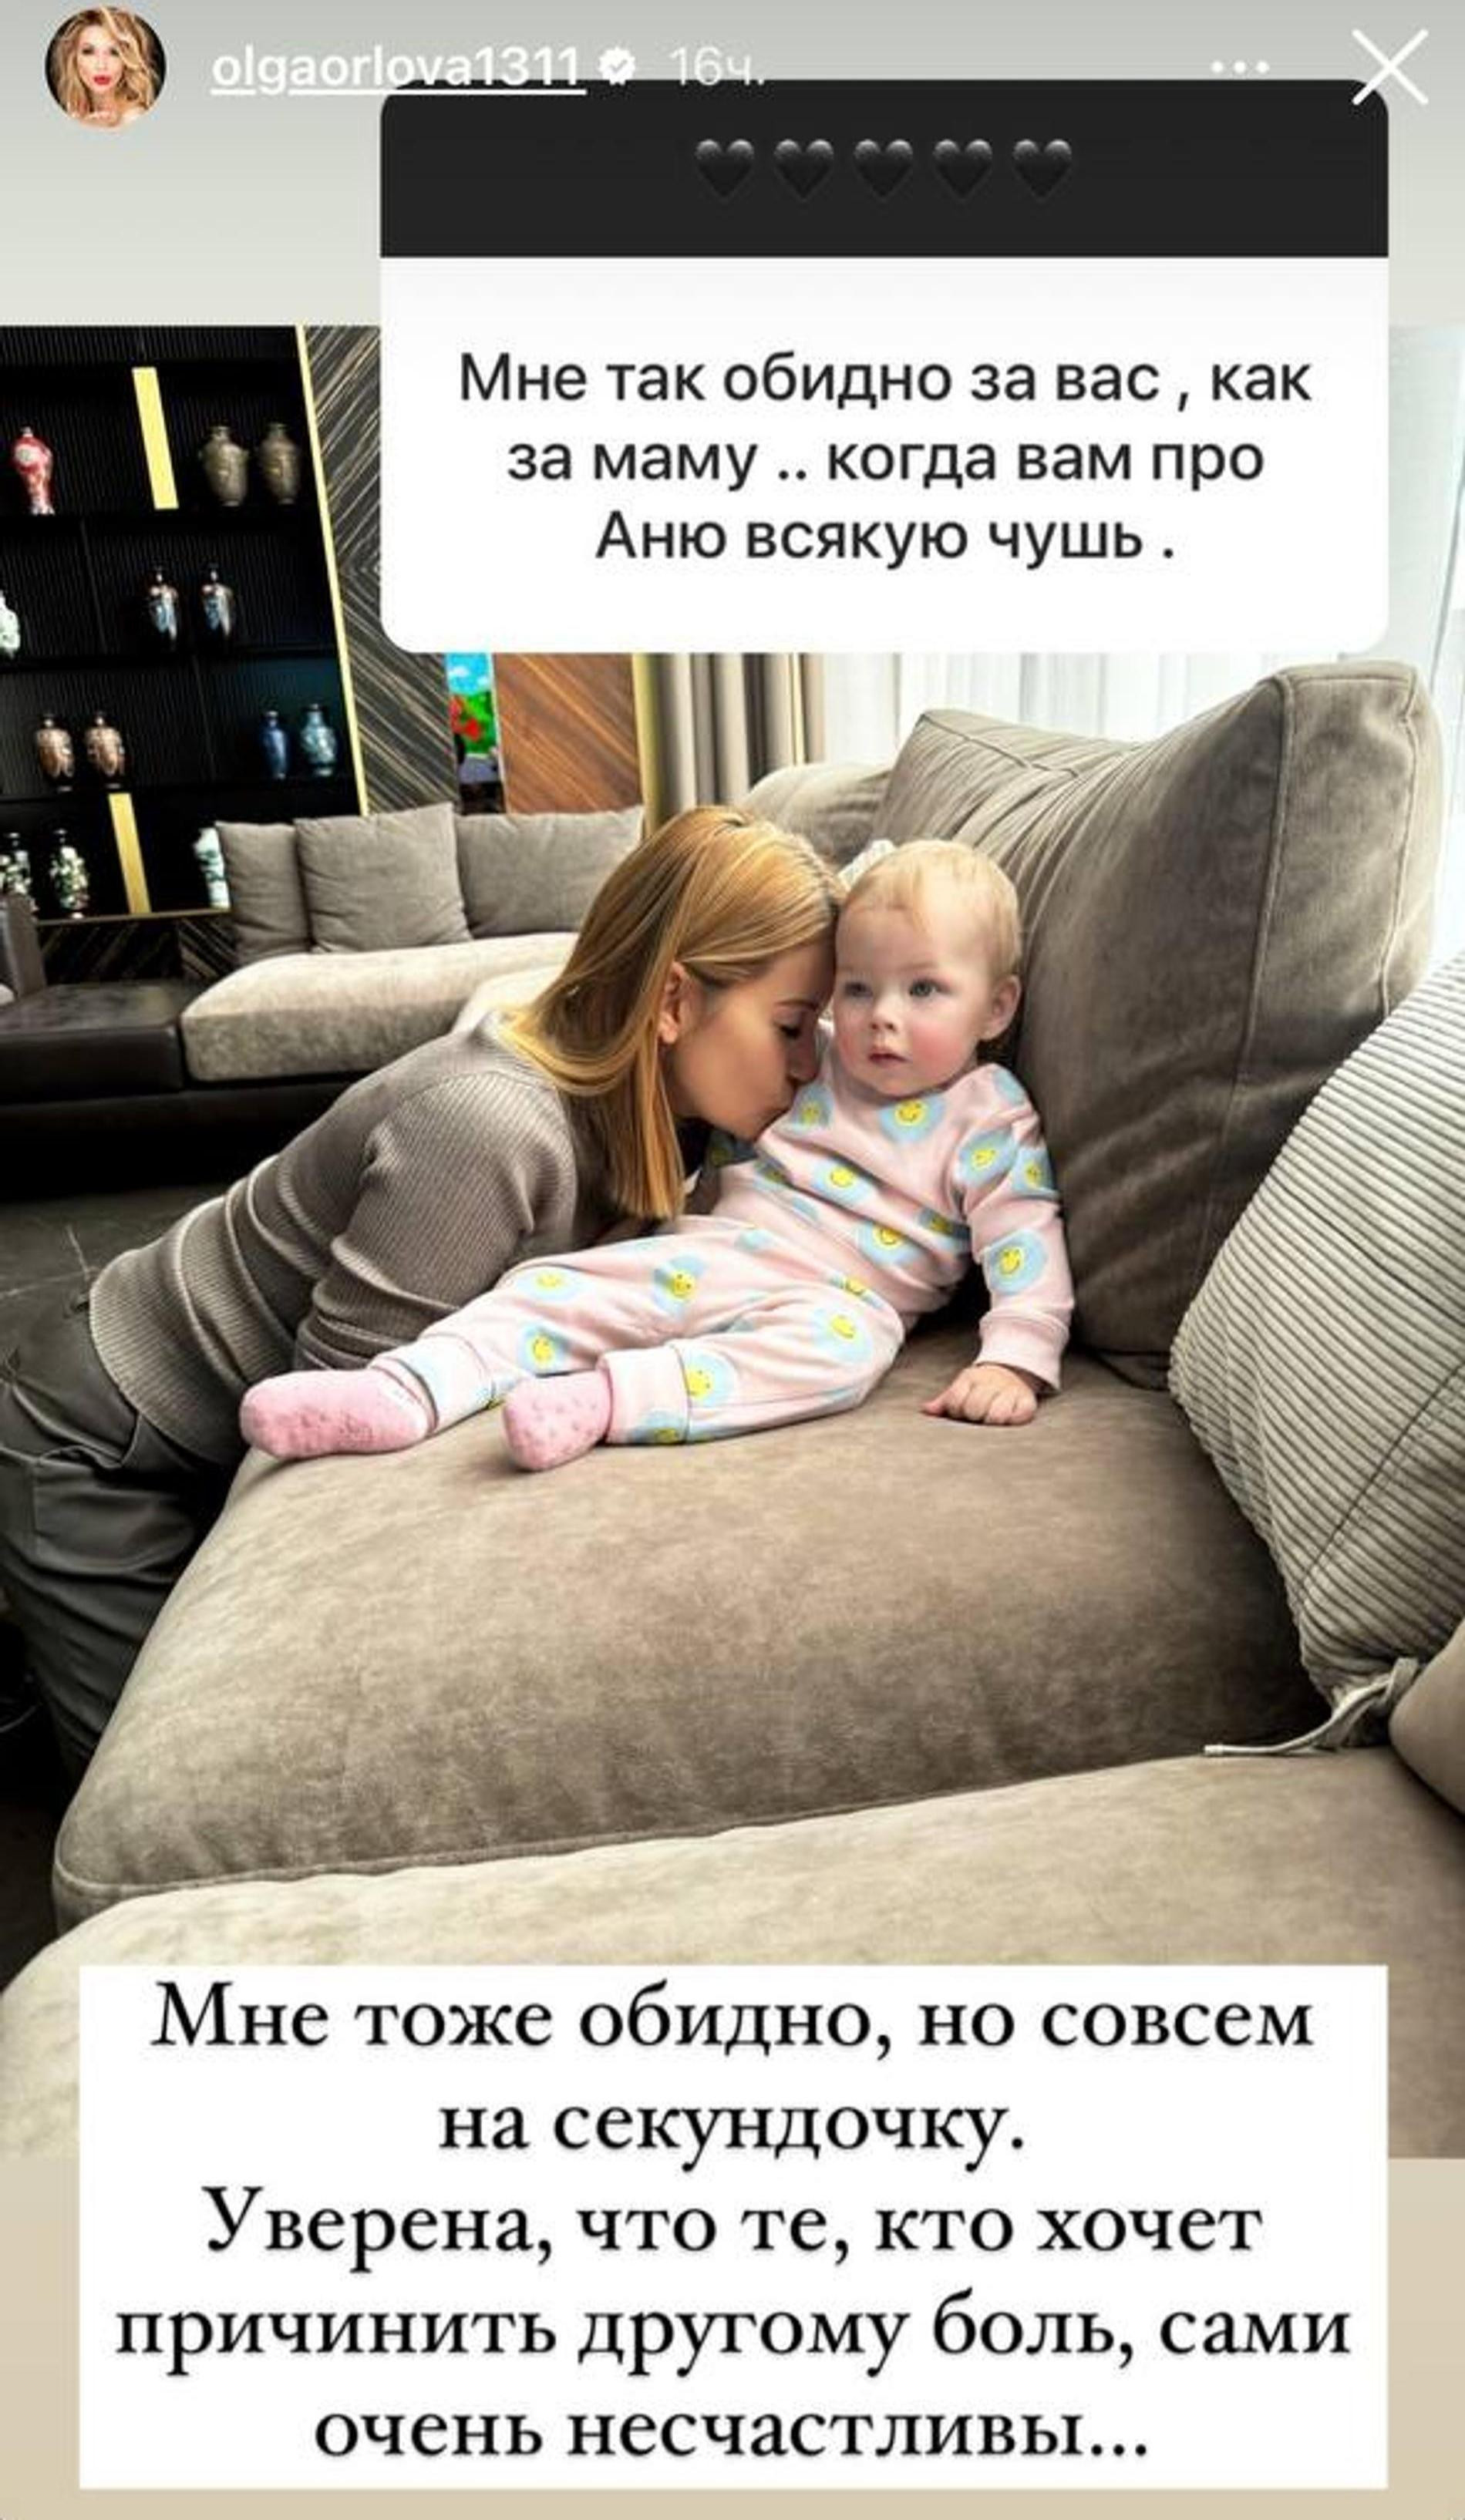 Ольга Орлова с дочерью Аней. Скриншот: Инстаграм* @olgaorlova1311